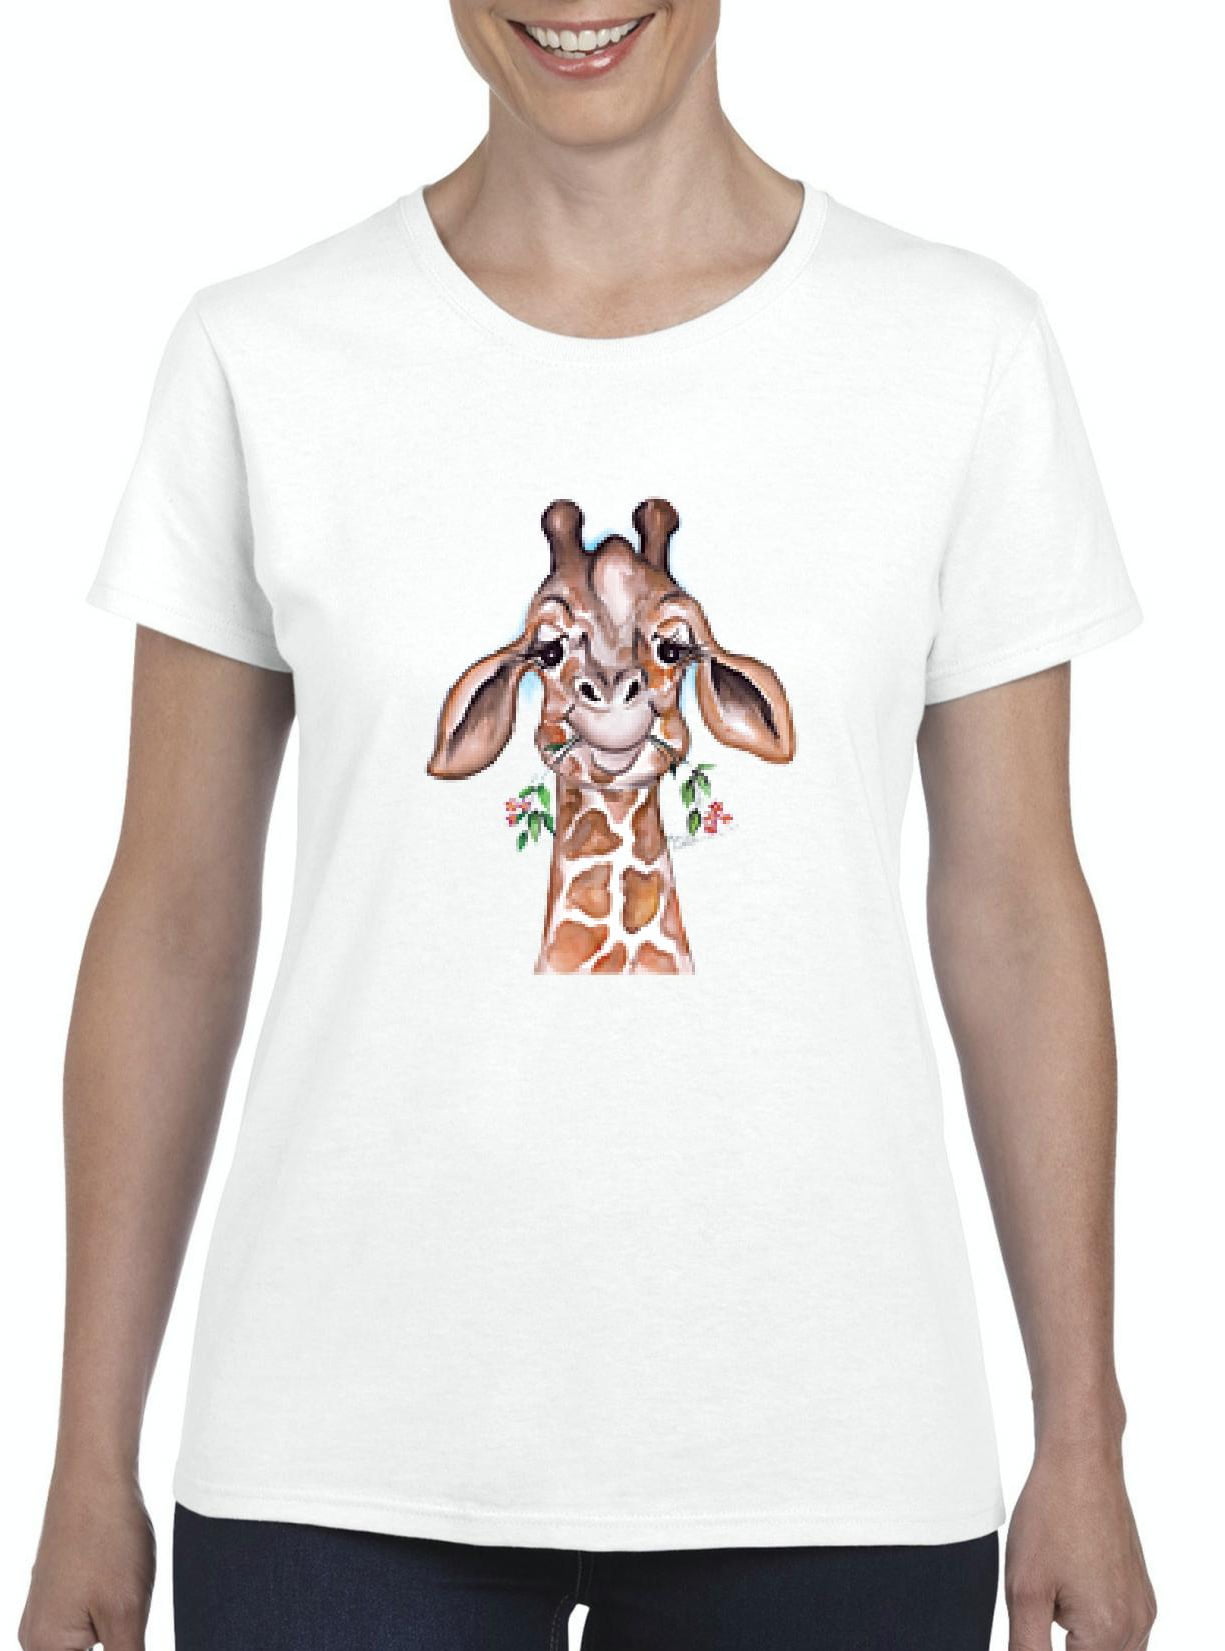 IWPF - Womens Giraffe Short Sleeve T-Shirt - Walmart.com - Walmart.com